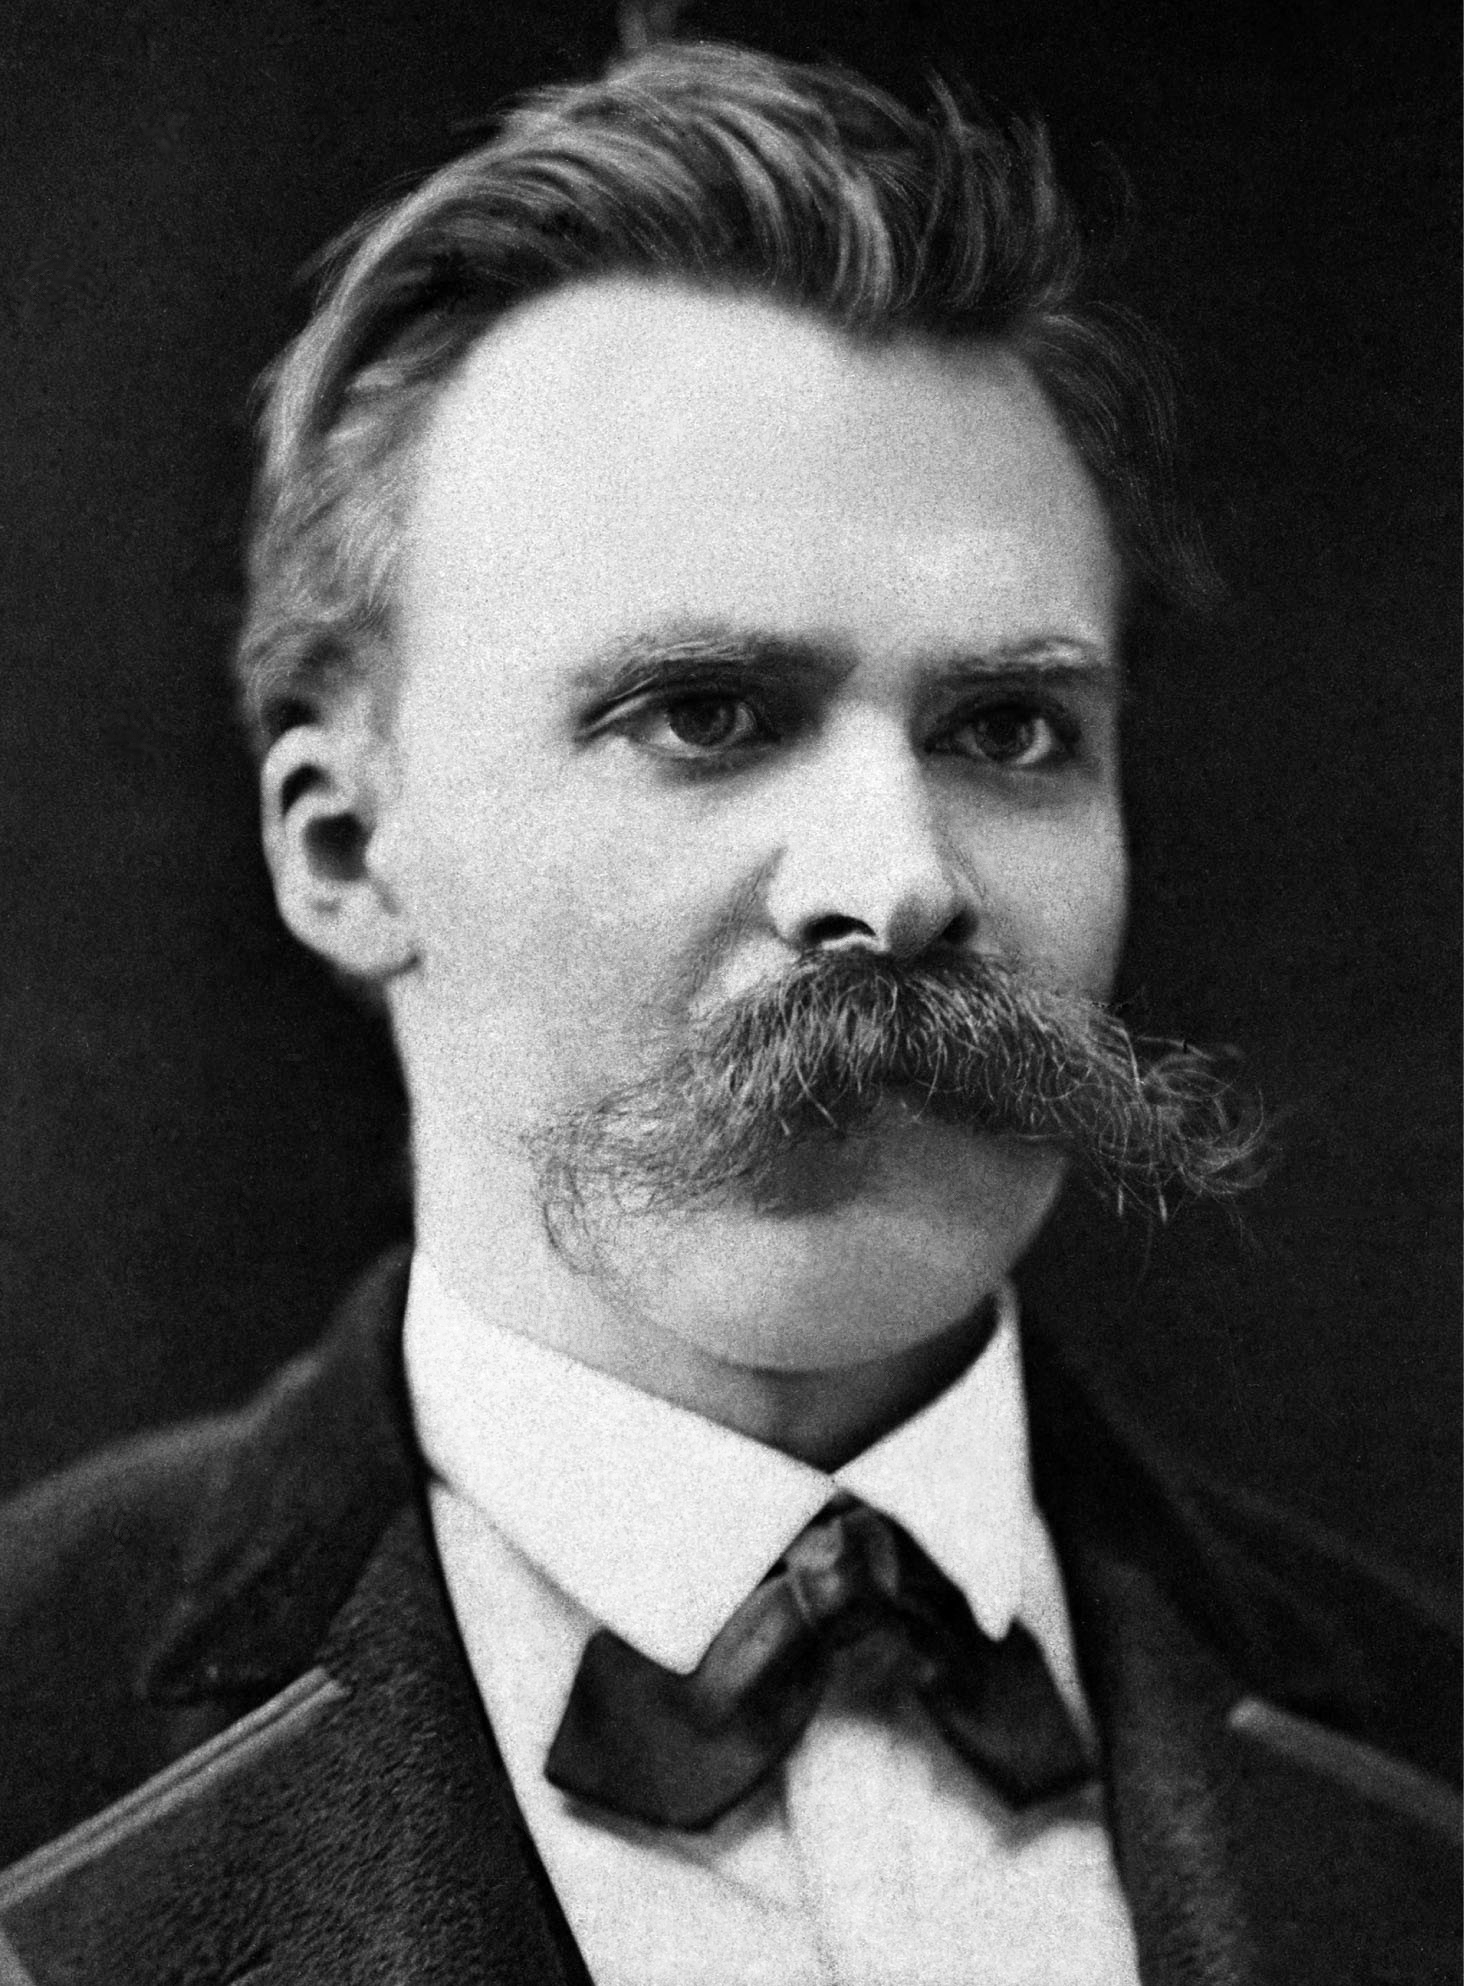 Poet Friedrich Nietzsche